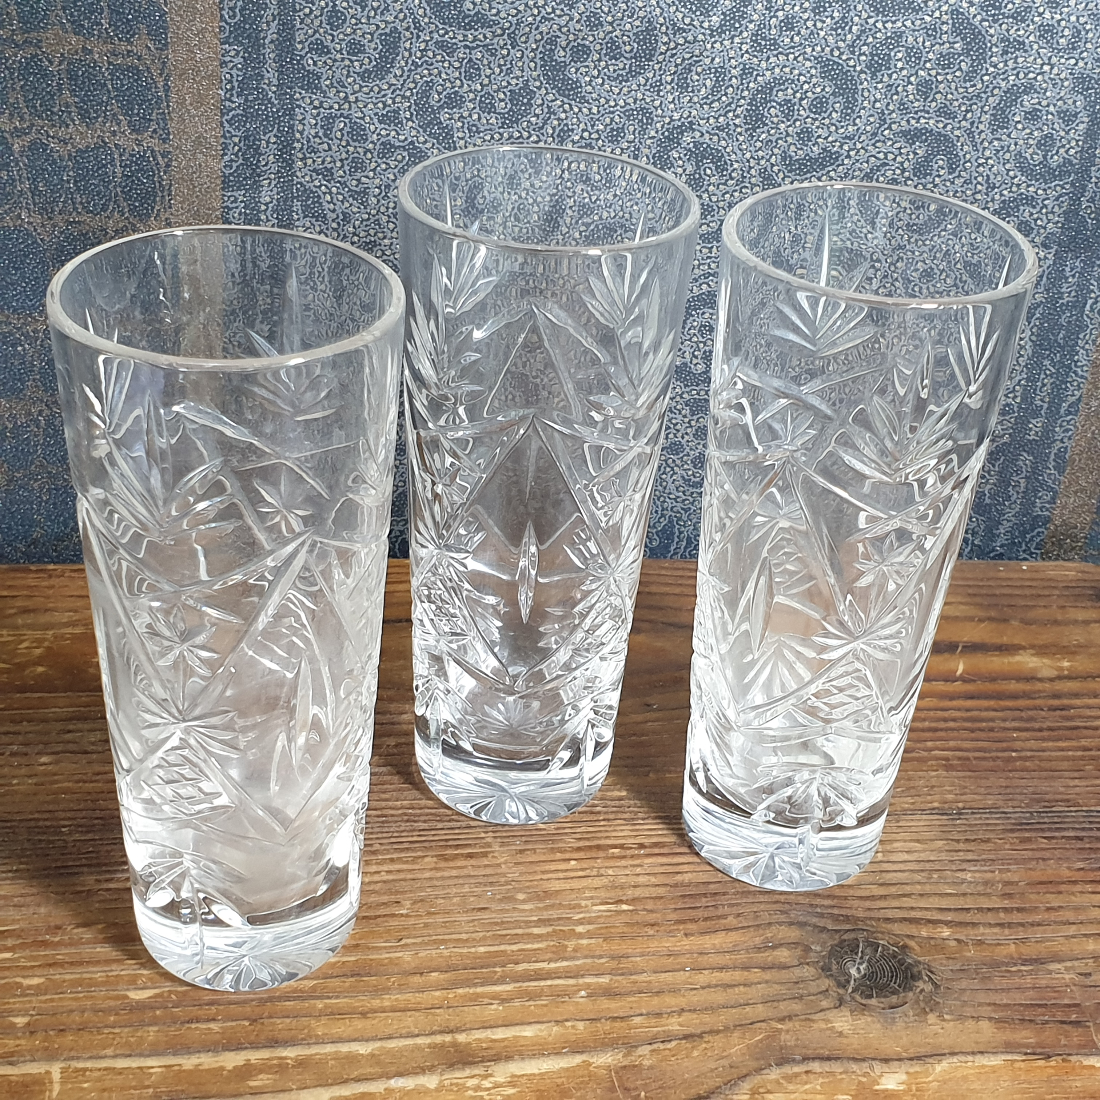 Три хрустальных стакана, цена за предмет. Картинка 1